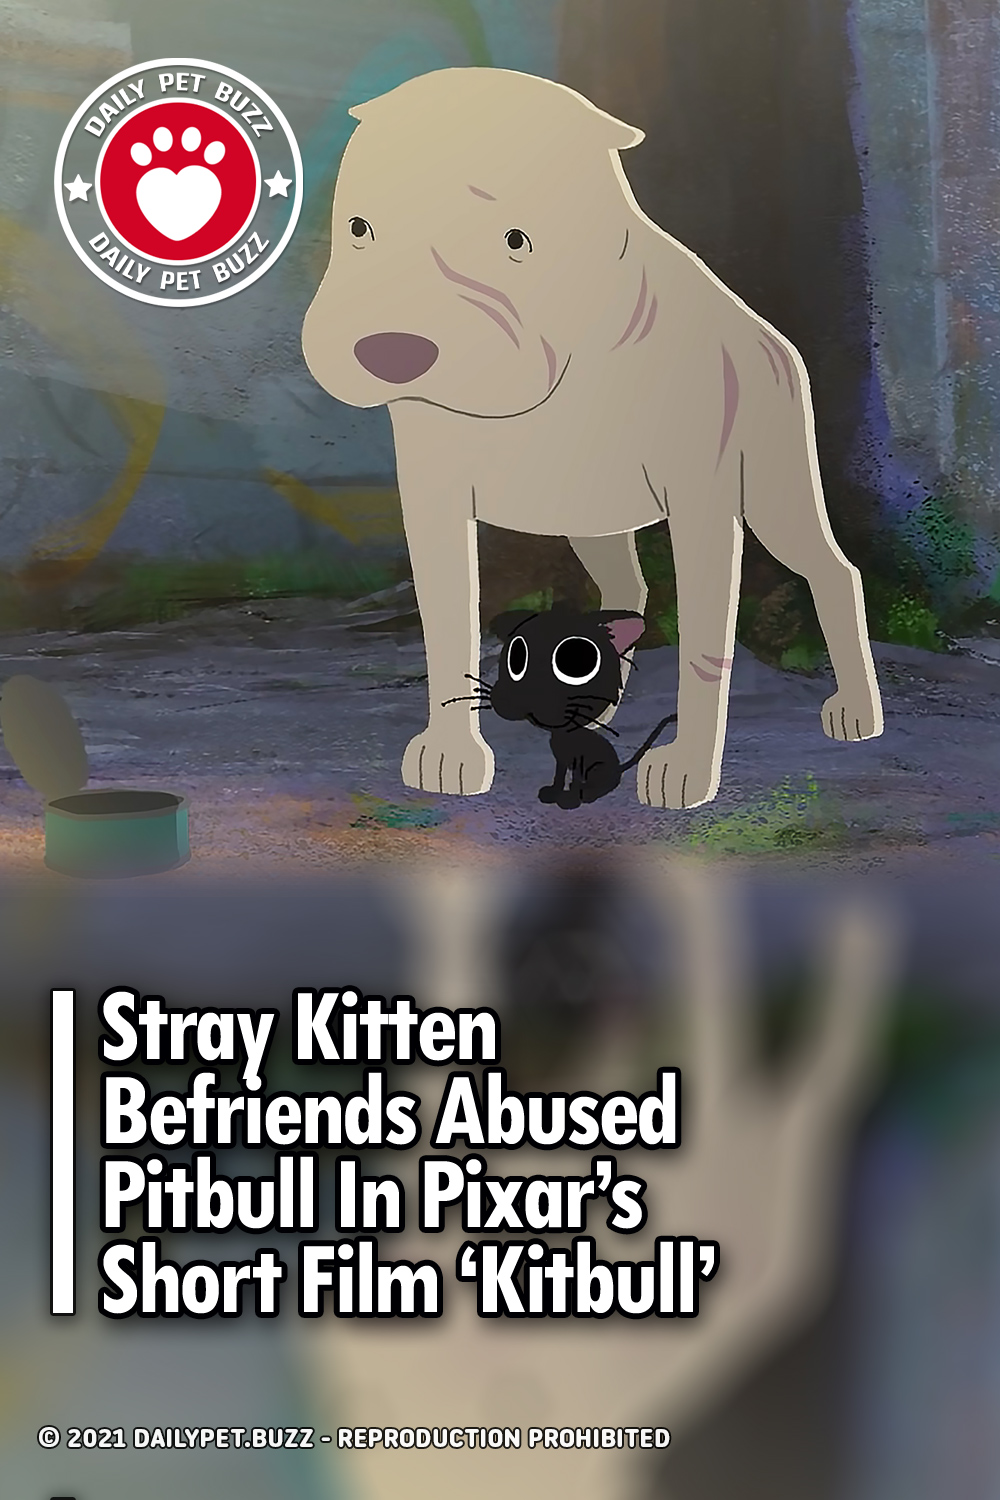 Stray Kitten Befriends Abused Pitbull In Pixar’s Short Film ‘Kitbull’